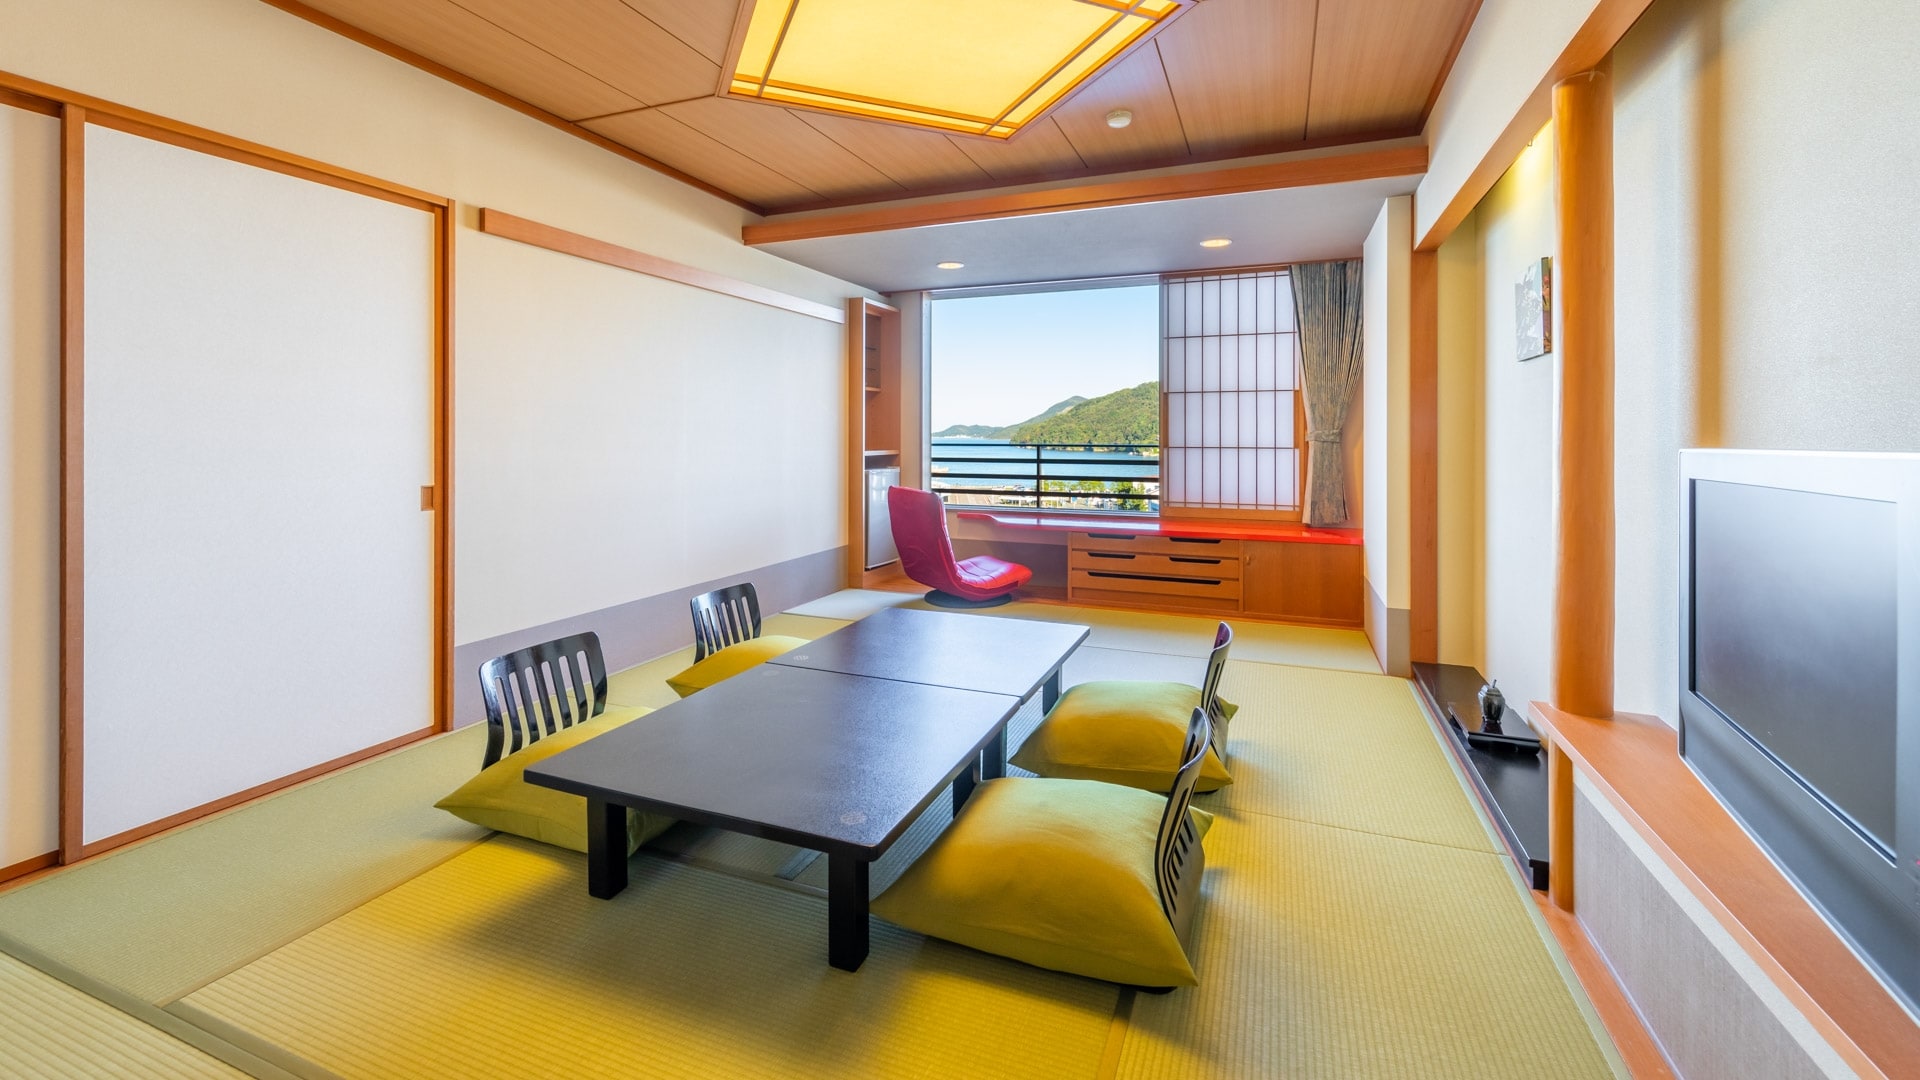 "อาคารทิศใต้" ห้องสไตล์ญี่ปุ่น (ตัวอย่าง) * แผนผังชั้นและภูมิทัศน์แตกต่างกันไปขึ้นอยู่กับห้อง